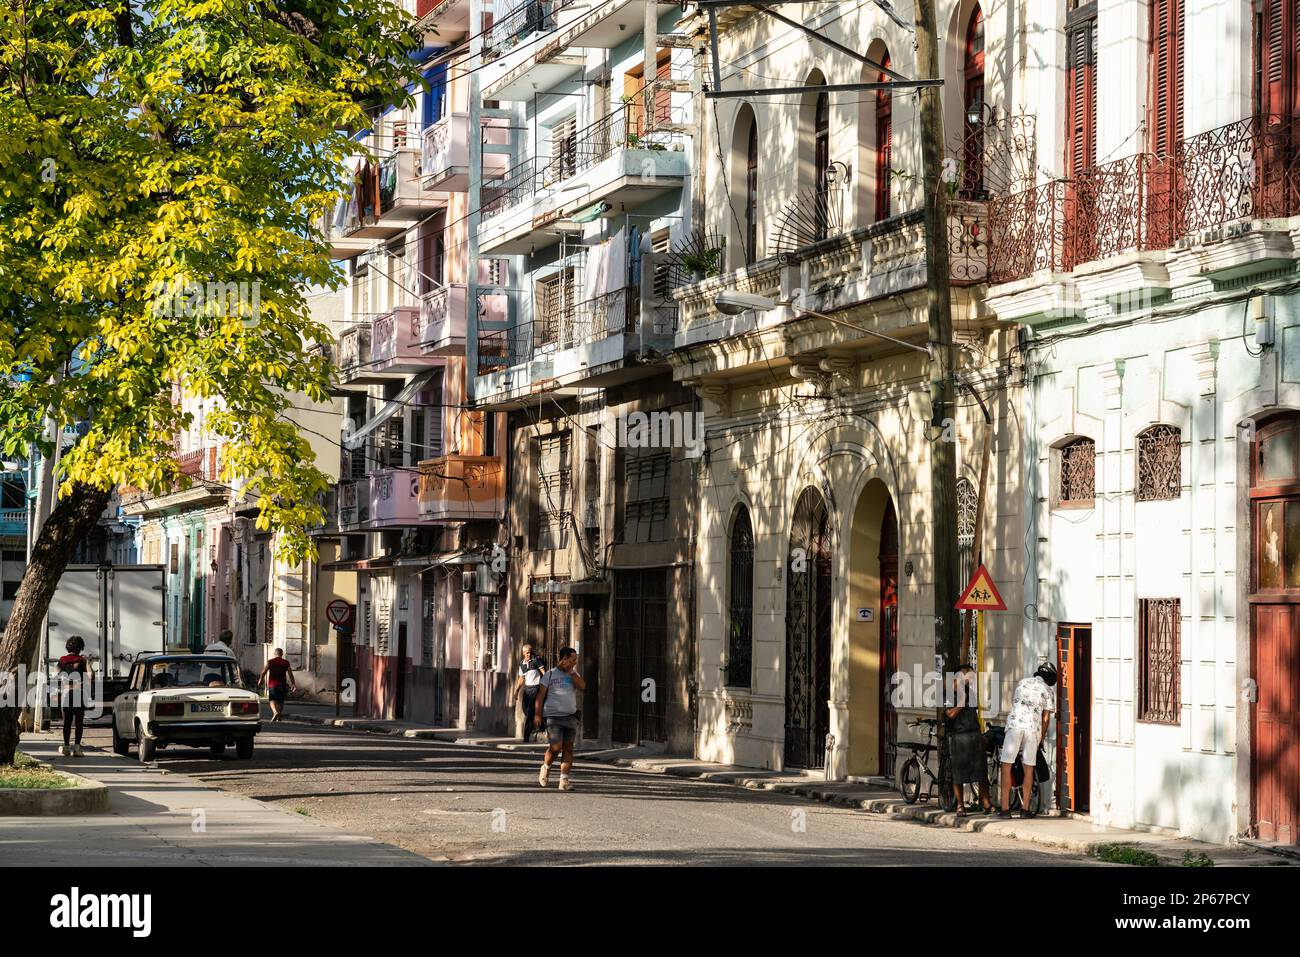 Rue typique avec de vieilles grilles et balcons de style espagnol, la Vieille Havane, Cuba, Antilles, Caraïbes, Amérique centrale Banque D'Images